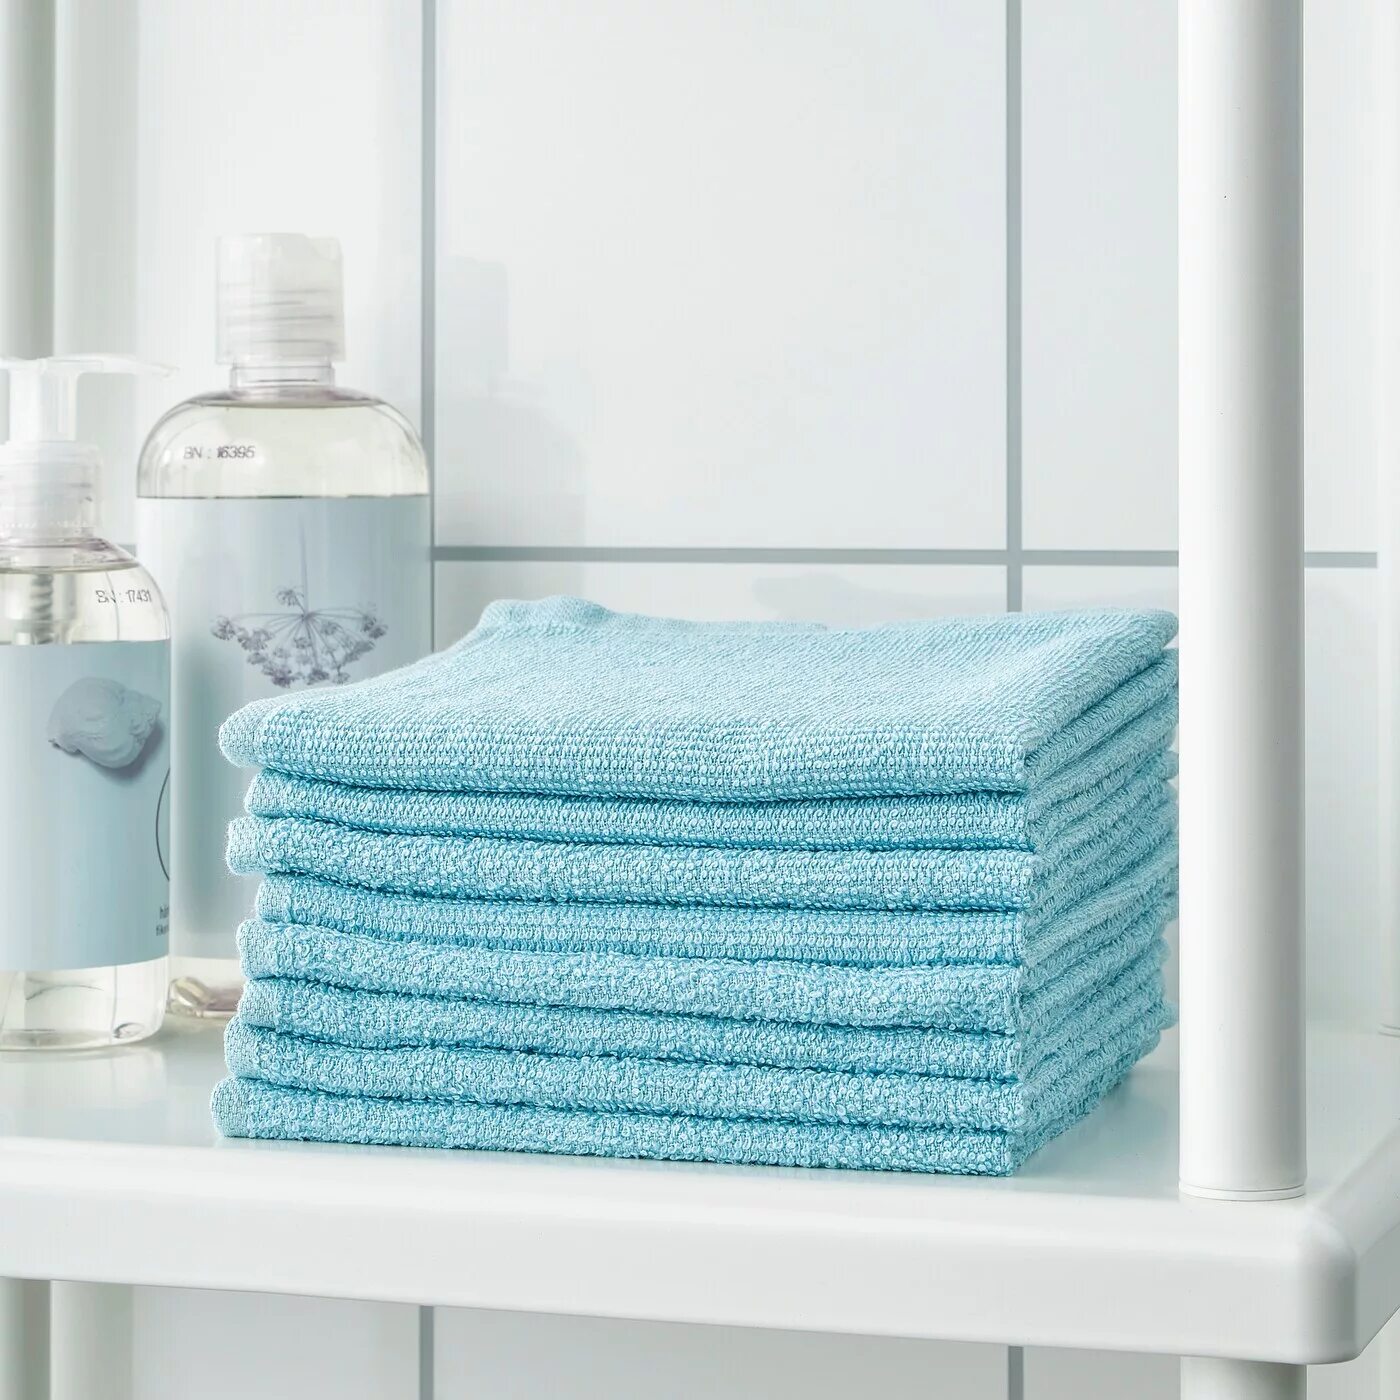 Полотенце икеа купить. Корнан полотенце икеа. Kornan Корнан банное полотенце, голубой70x140 см, шт. Kornan Корнан полотенце, серый30x50 см. Ikea полотенце голубое.